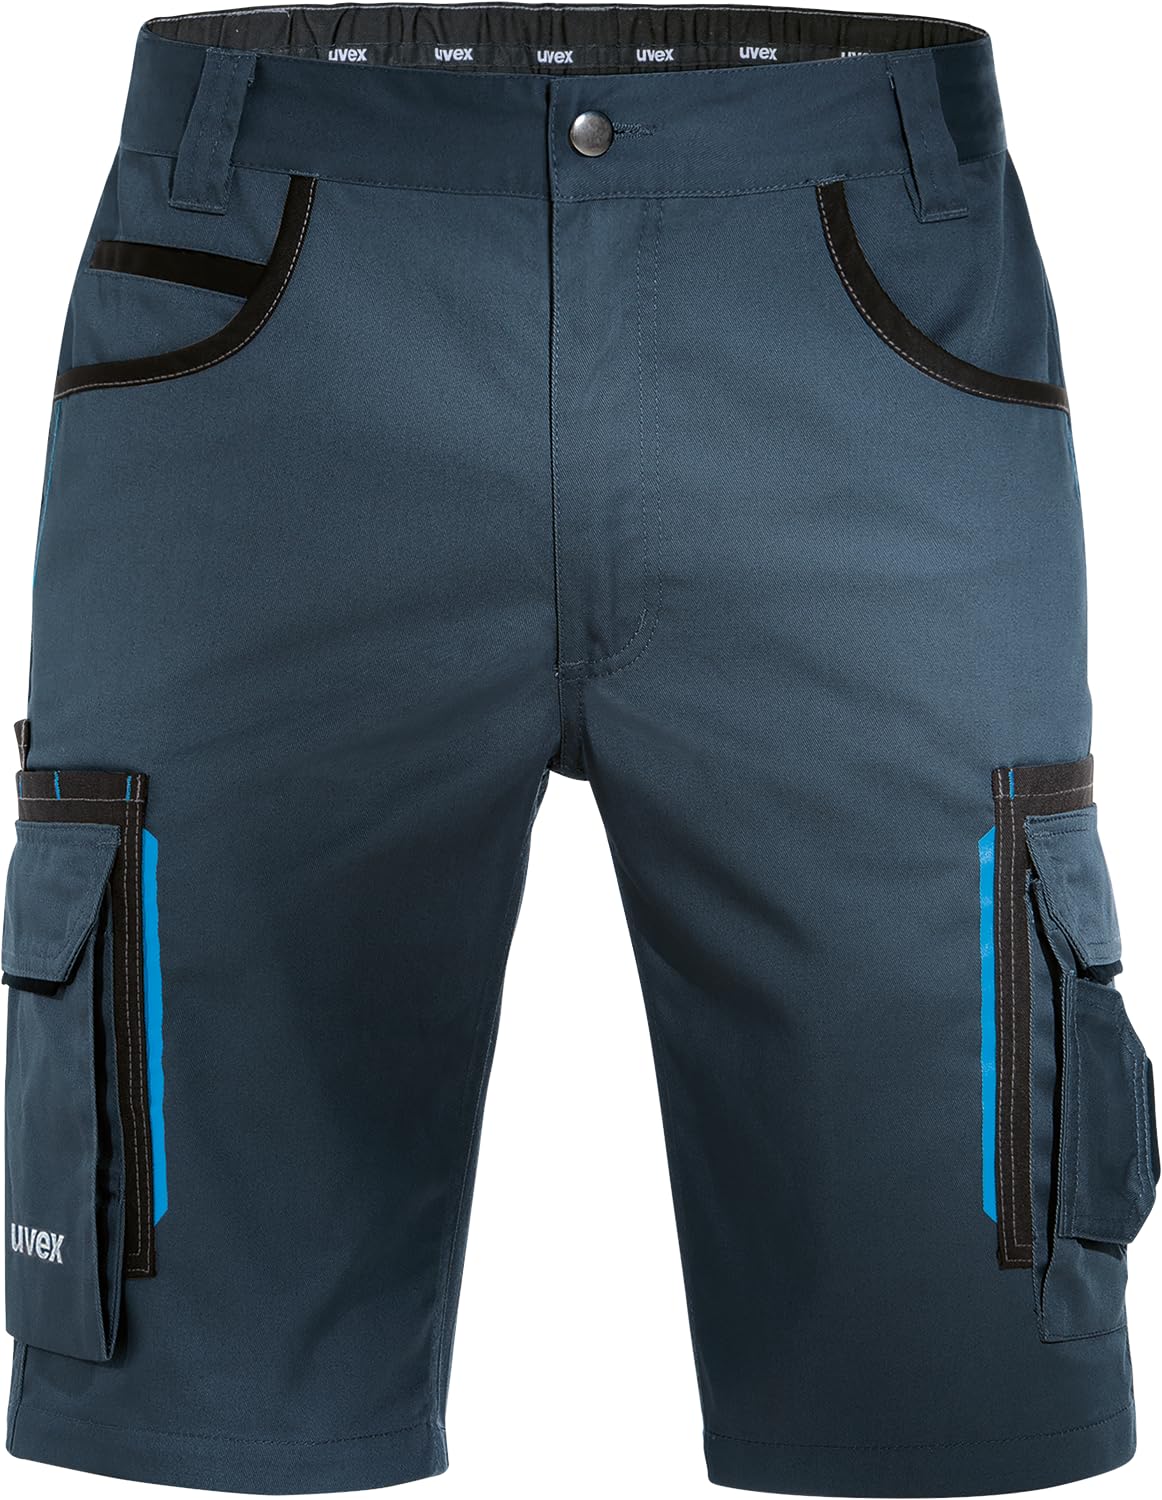 Uvex Tune-Up Arbeitshosen Männer Kurz - Shorts für die Arbeit - Dunkelblau - Gr 46W/Etikettengröße- 64